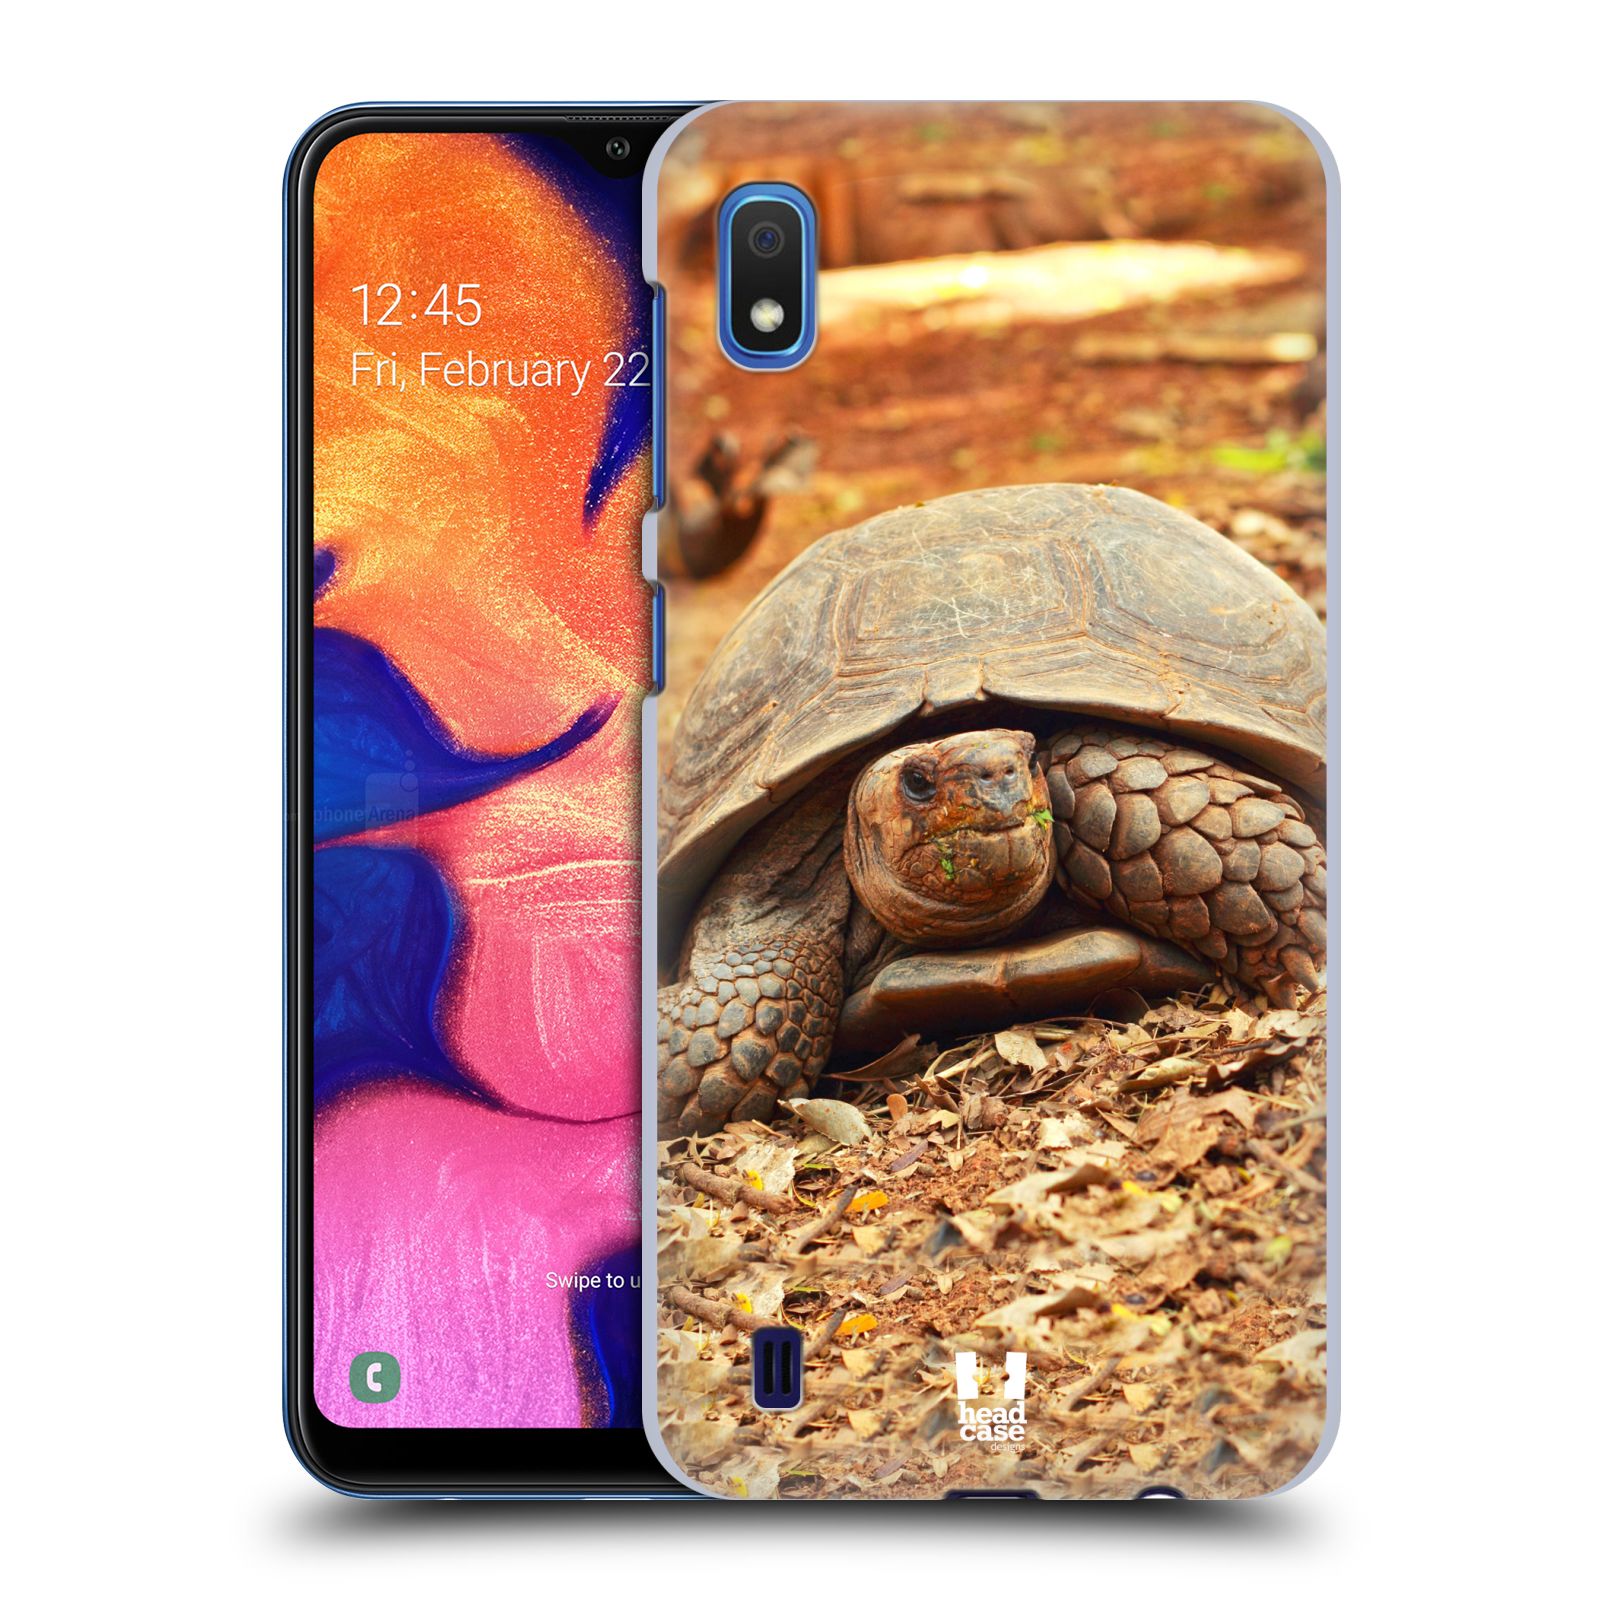 Pouzdro na mobil Samsung Galaxy A10 - HEAD CASE - vzor slavná zvířata foto želva